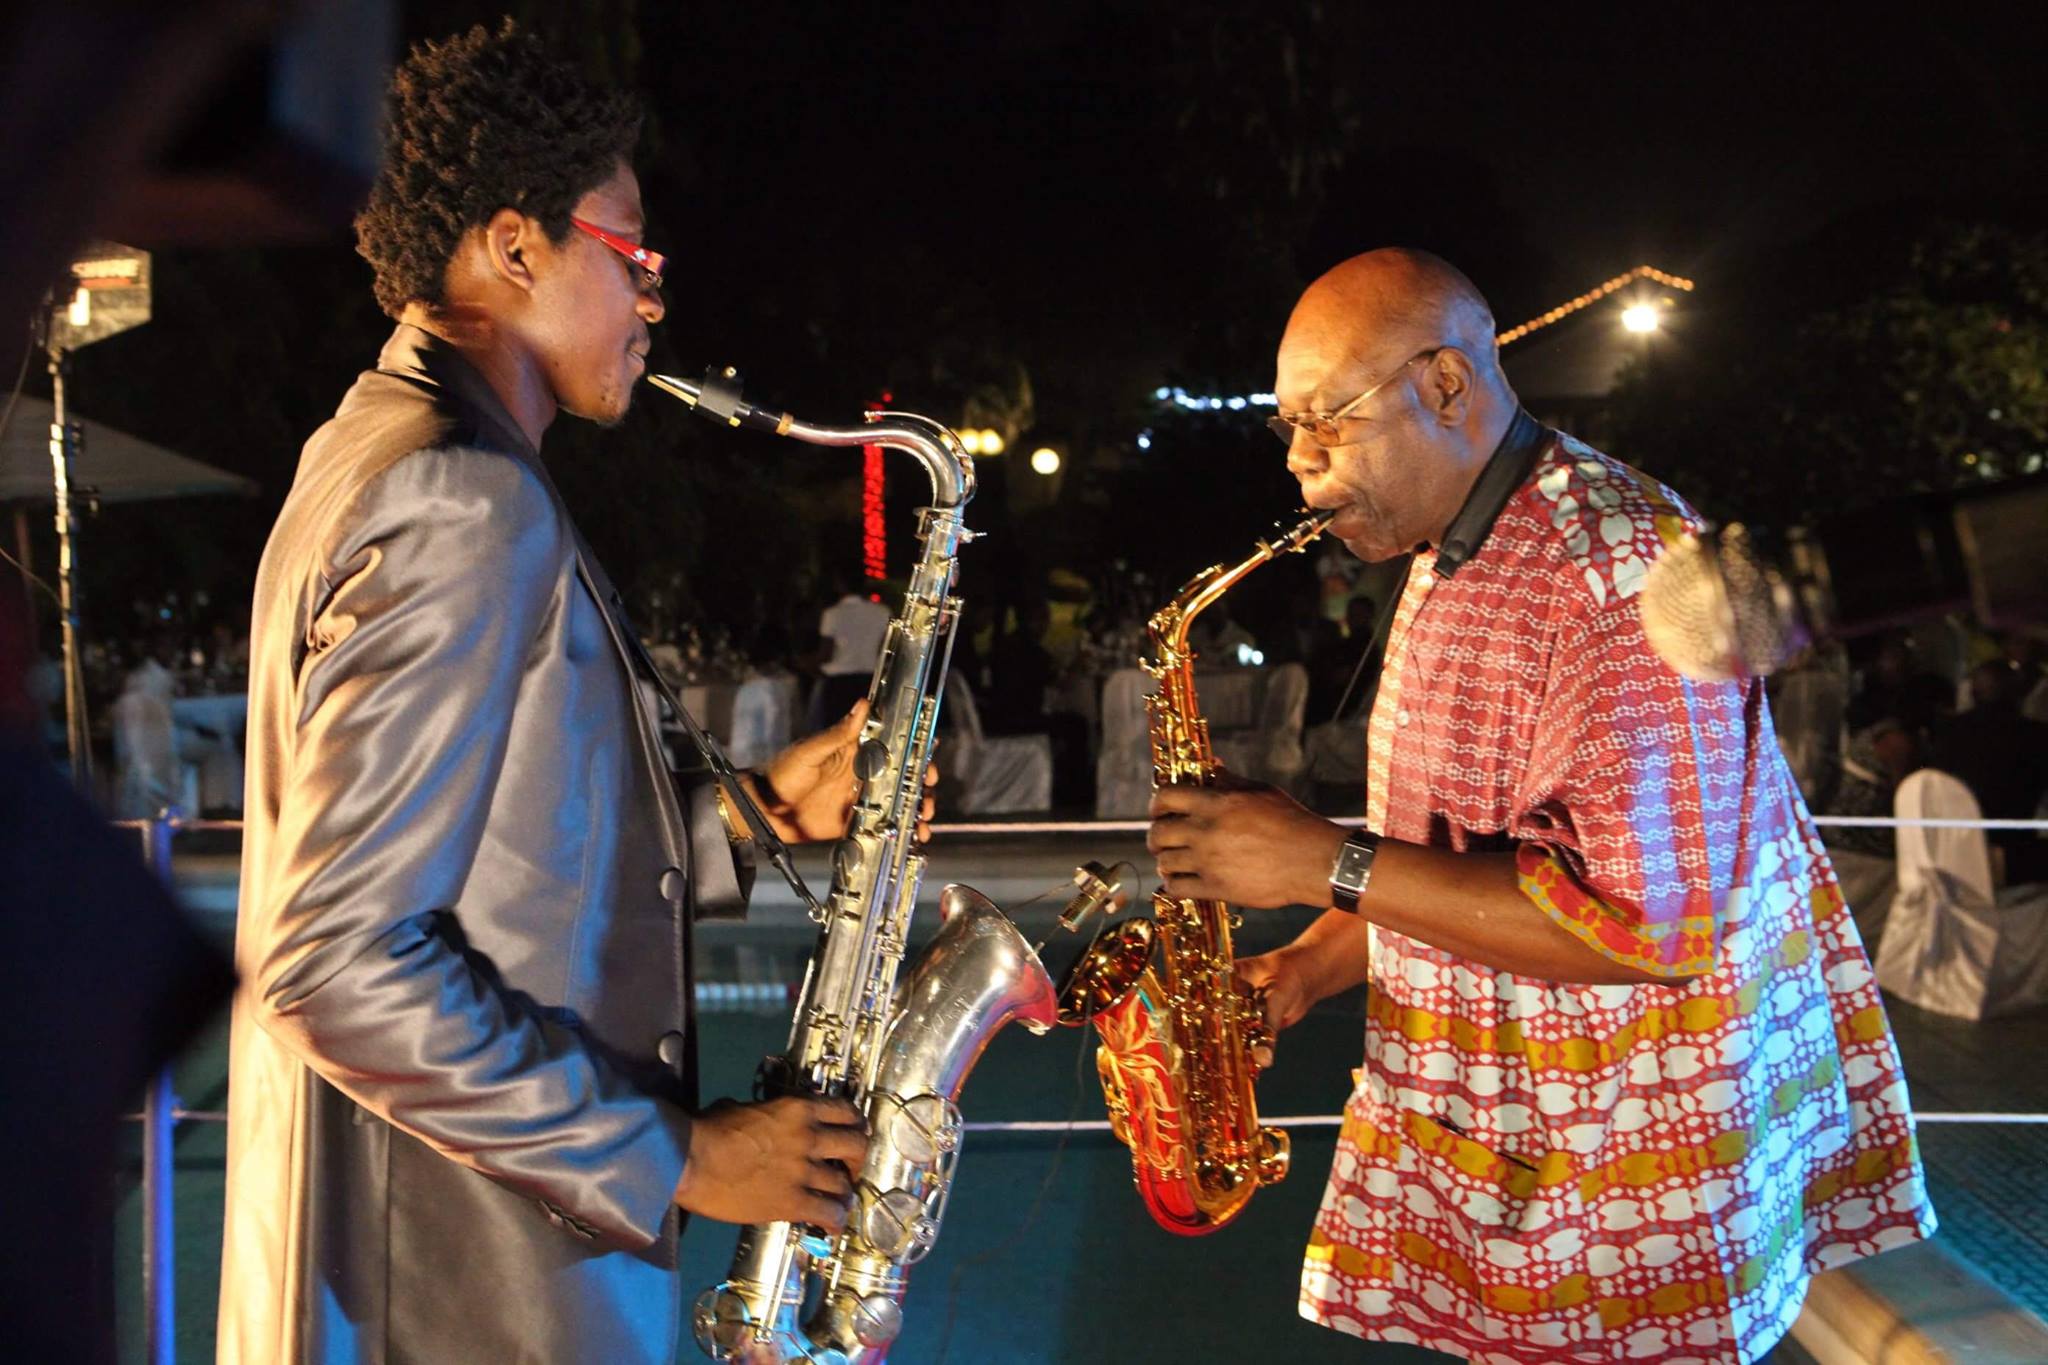 Le saxophone s’est dévoilé à lui très tôt. A 16 ans, Alain Rodrigue Oyono, de son nom d’artiste Alain Oyono, se faisait déjà des fans grâce à son jeu. Influencé par les jazzmen Kennedy, Dave Koz, Groover Washington, Charlie Parker et Manu Dibango, Alain Oyono